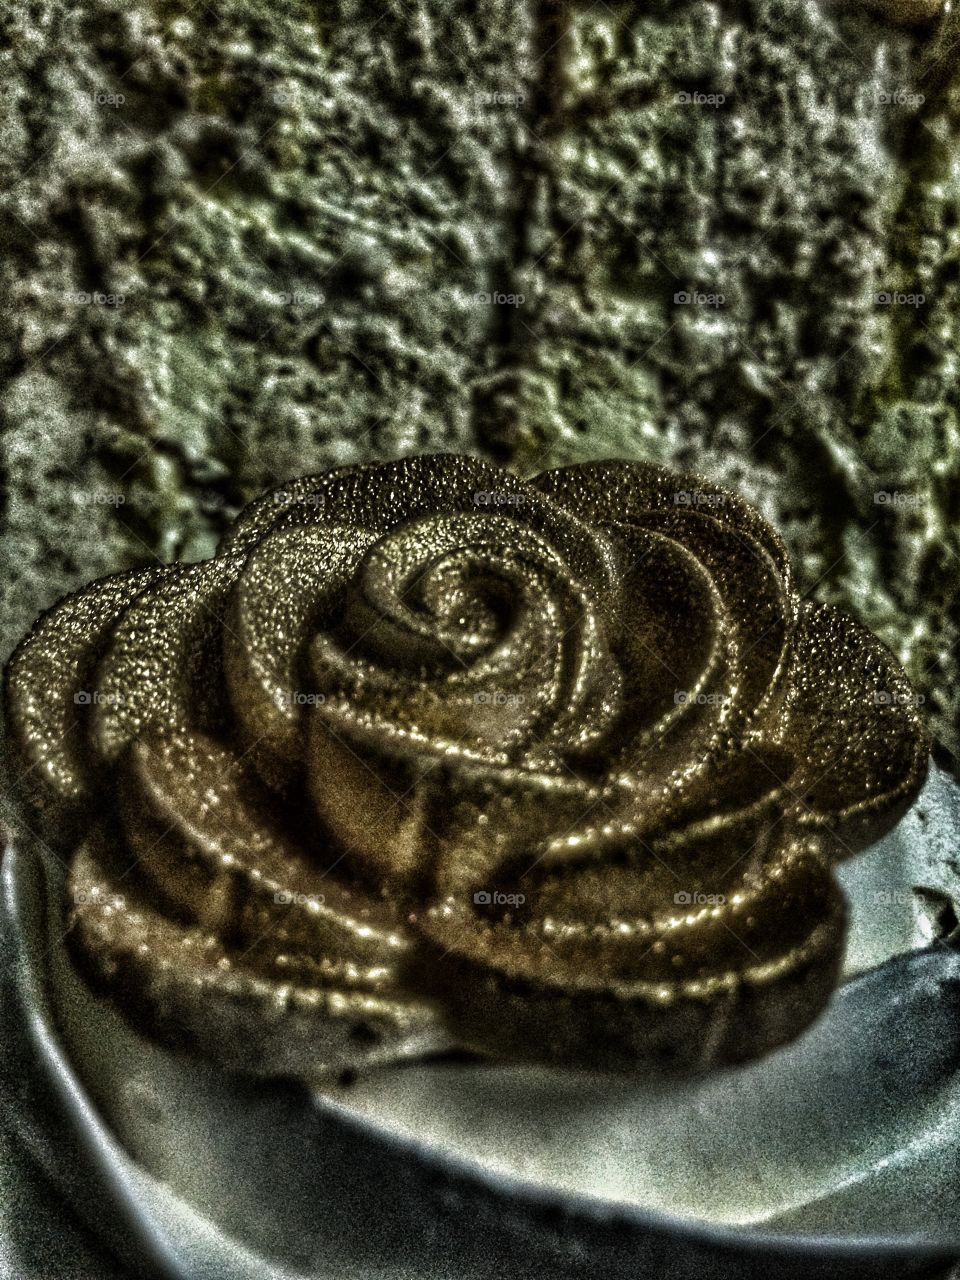 Rose cake 